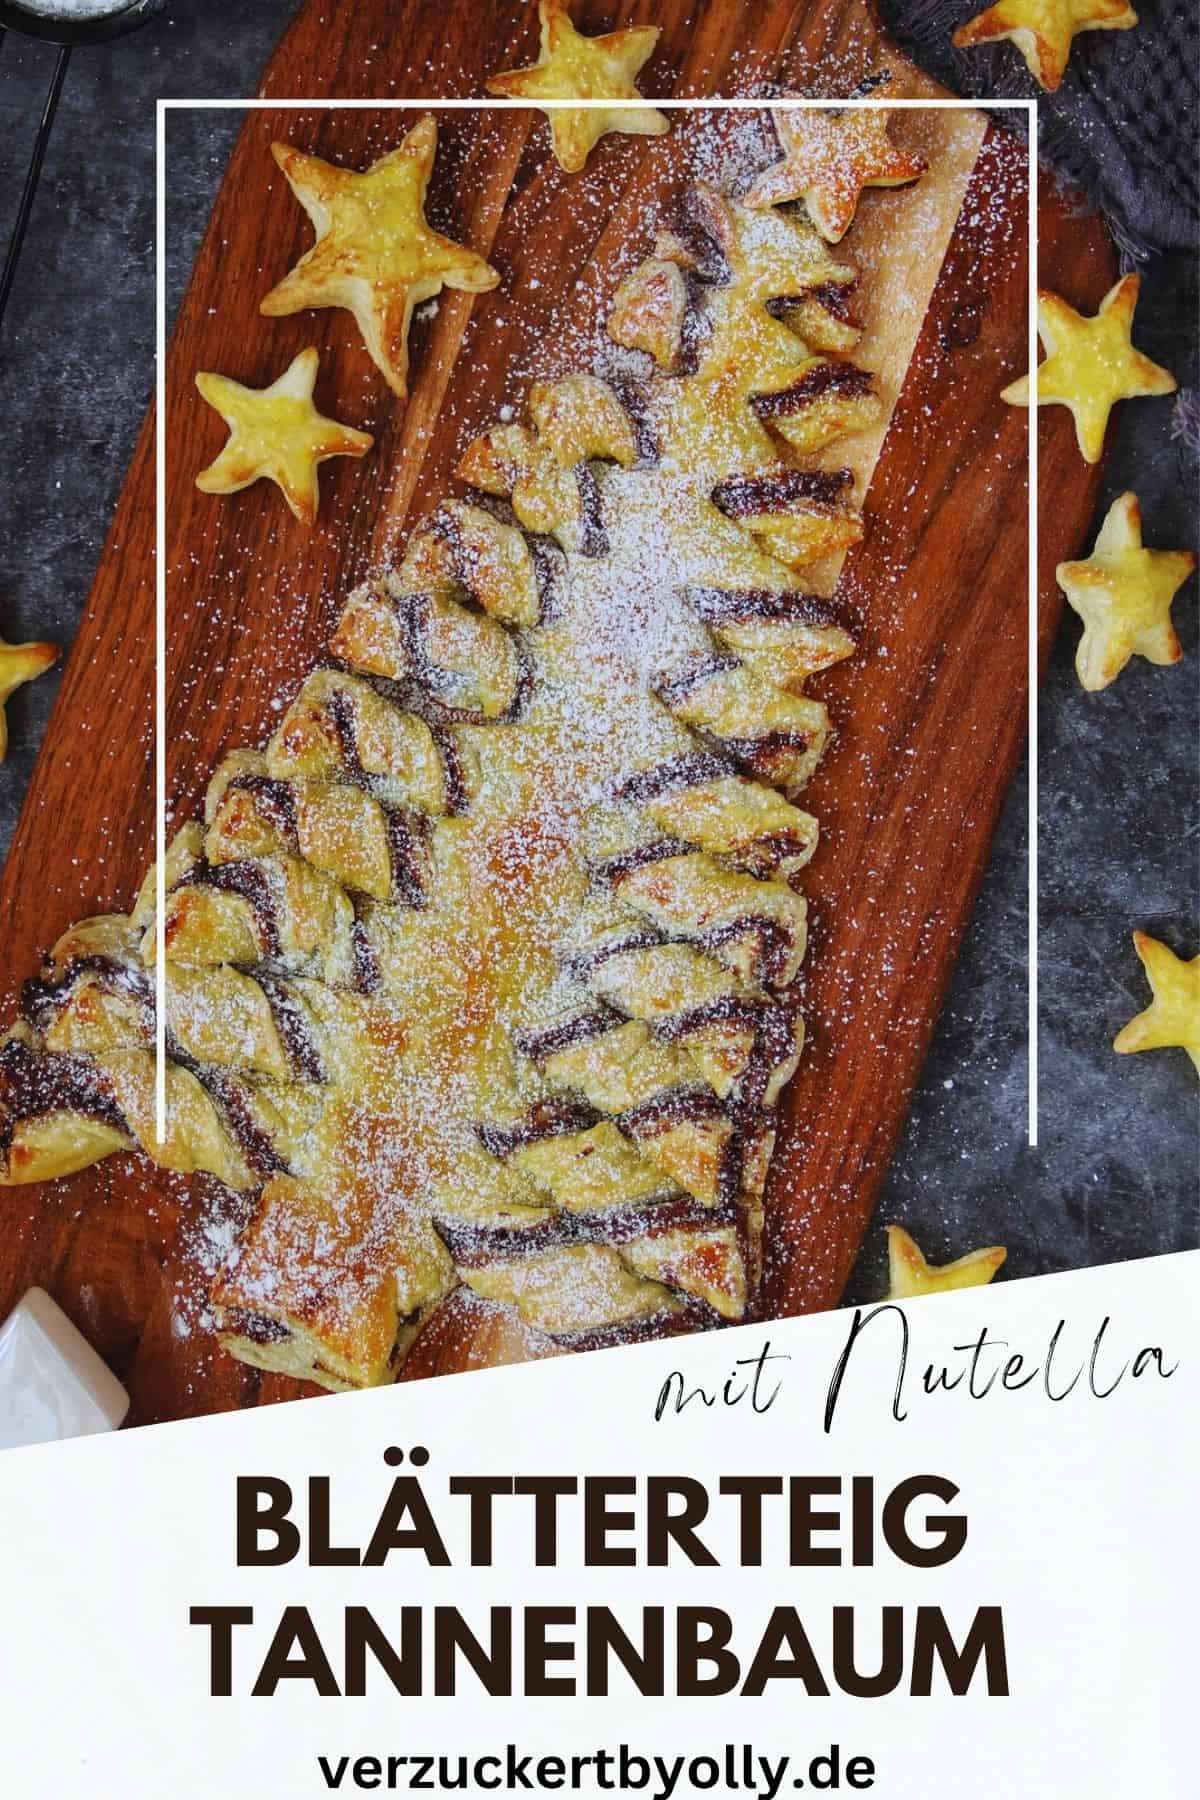 Pin zu Pinterest: Blätterteig-Tannenbaum mit Nutella 